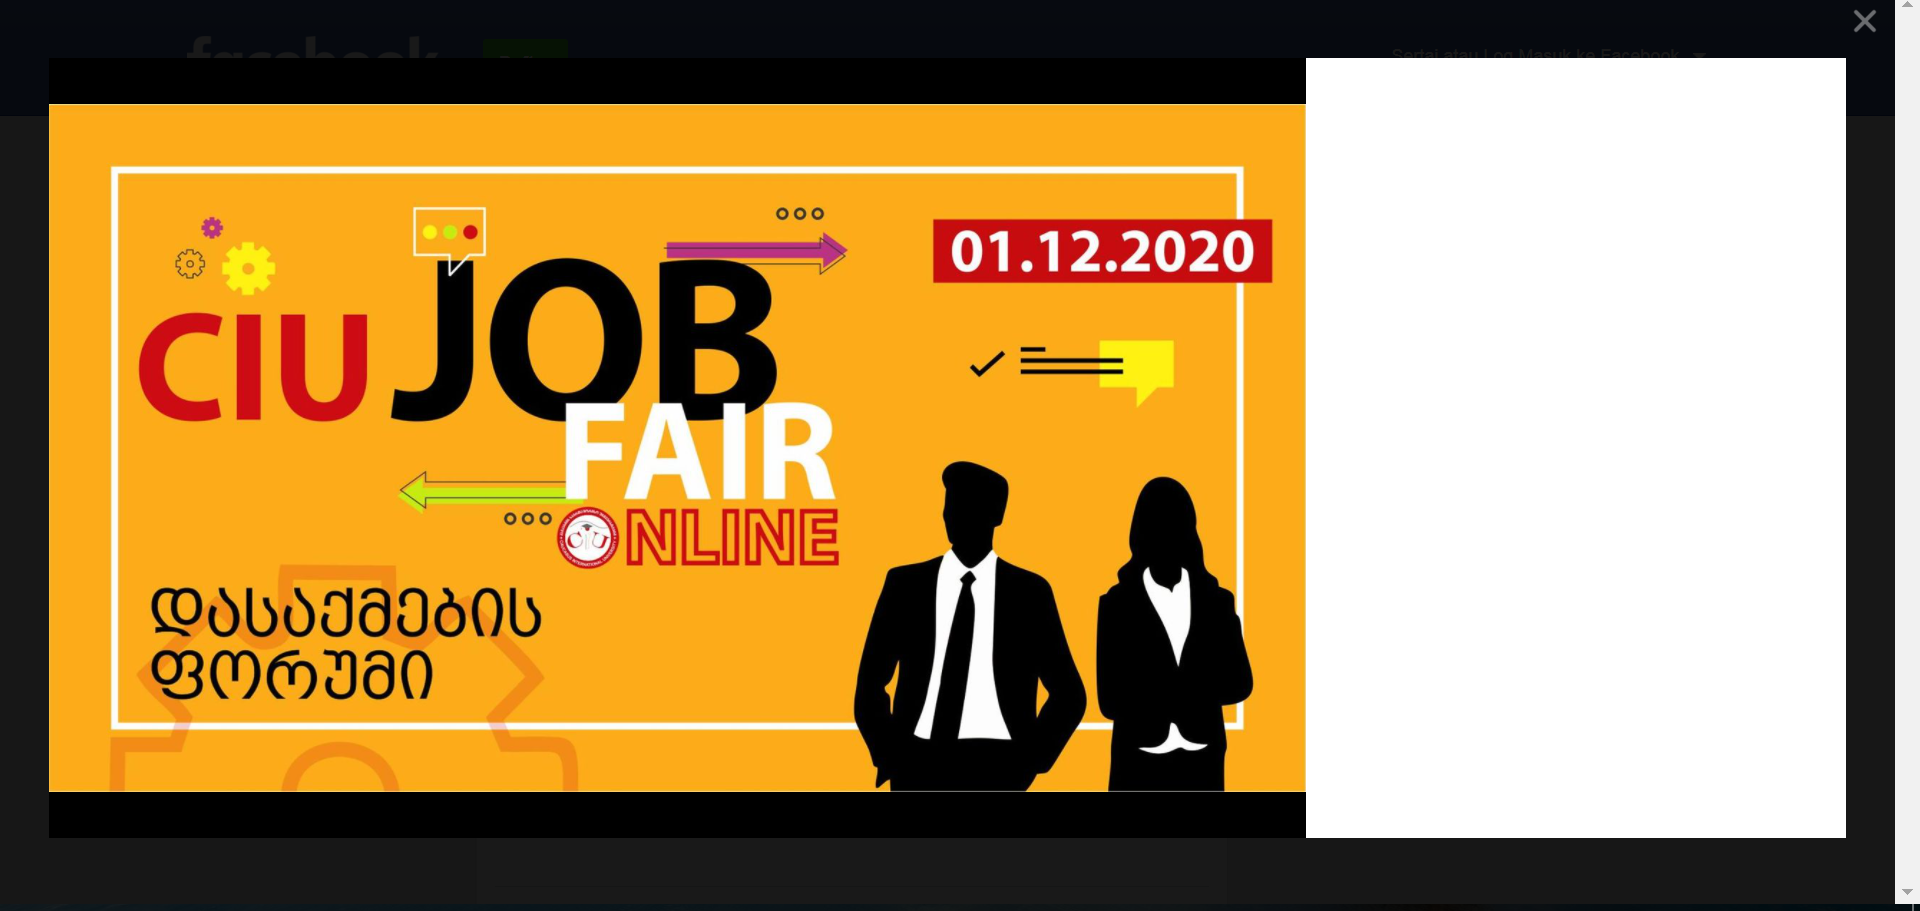 Job Fair 2020